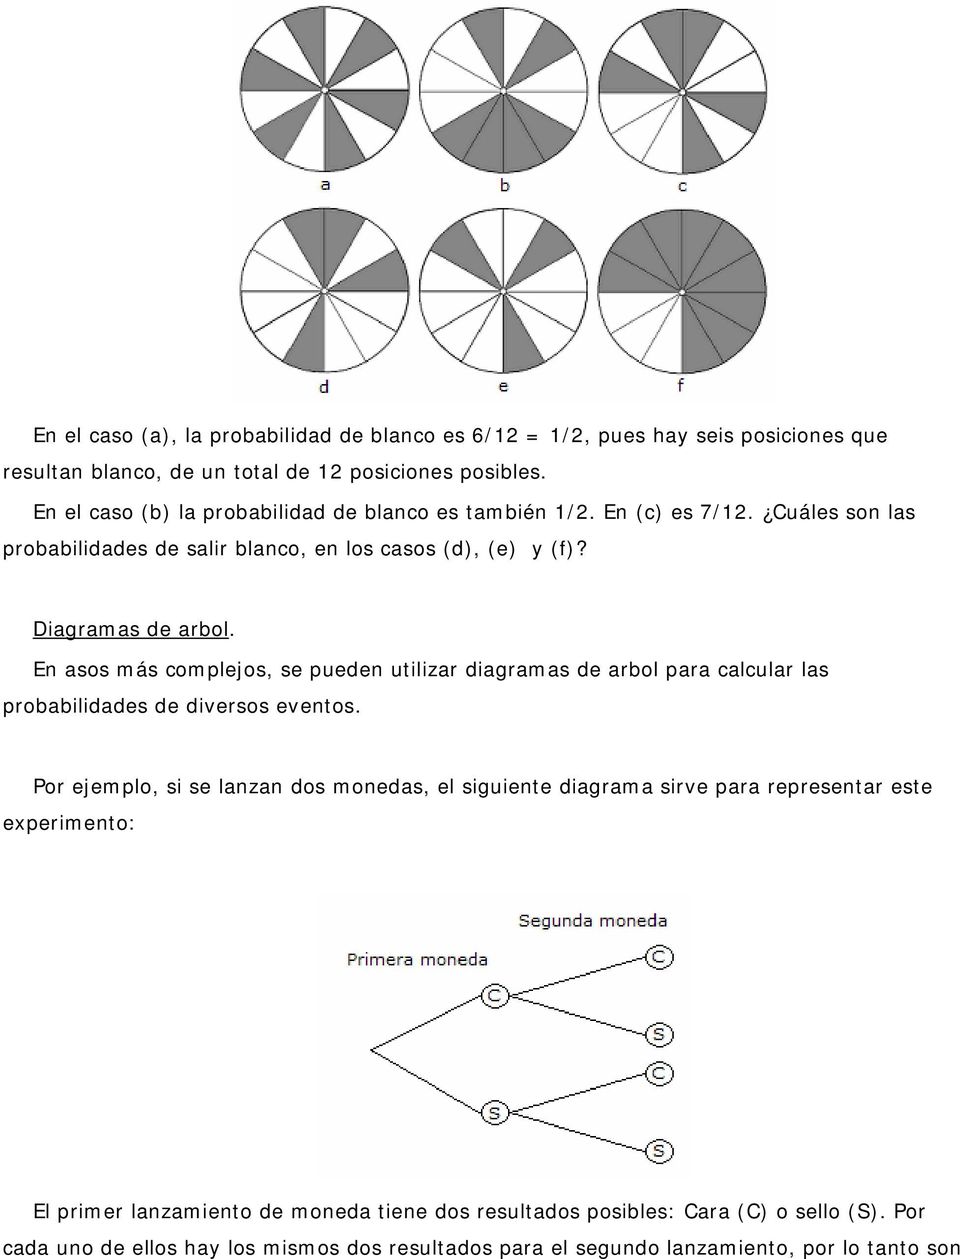 En asos más complejos, se pueden utilizar diagramas de arbol para calcular las probabilidades de diversos eventos.